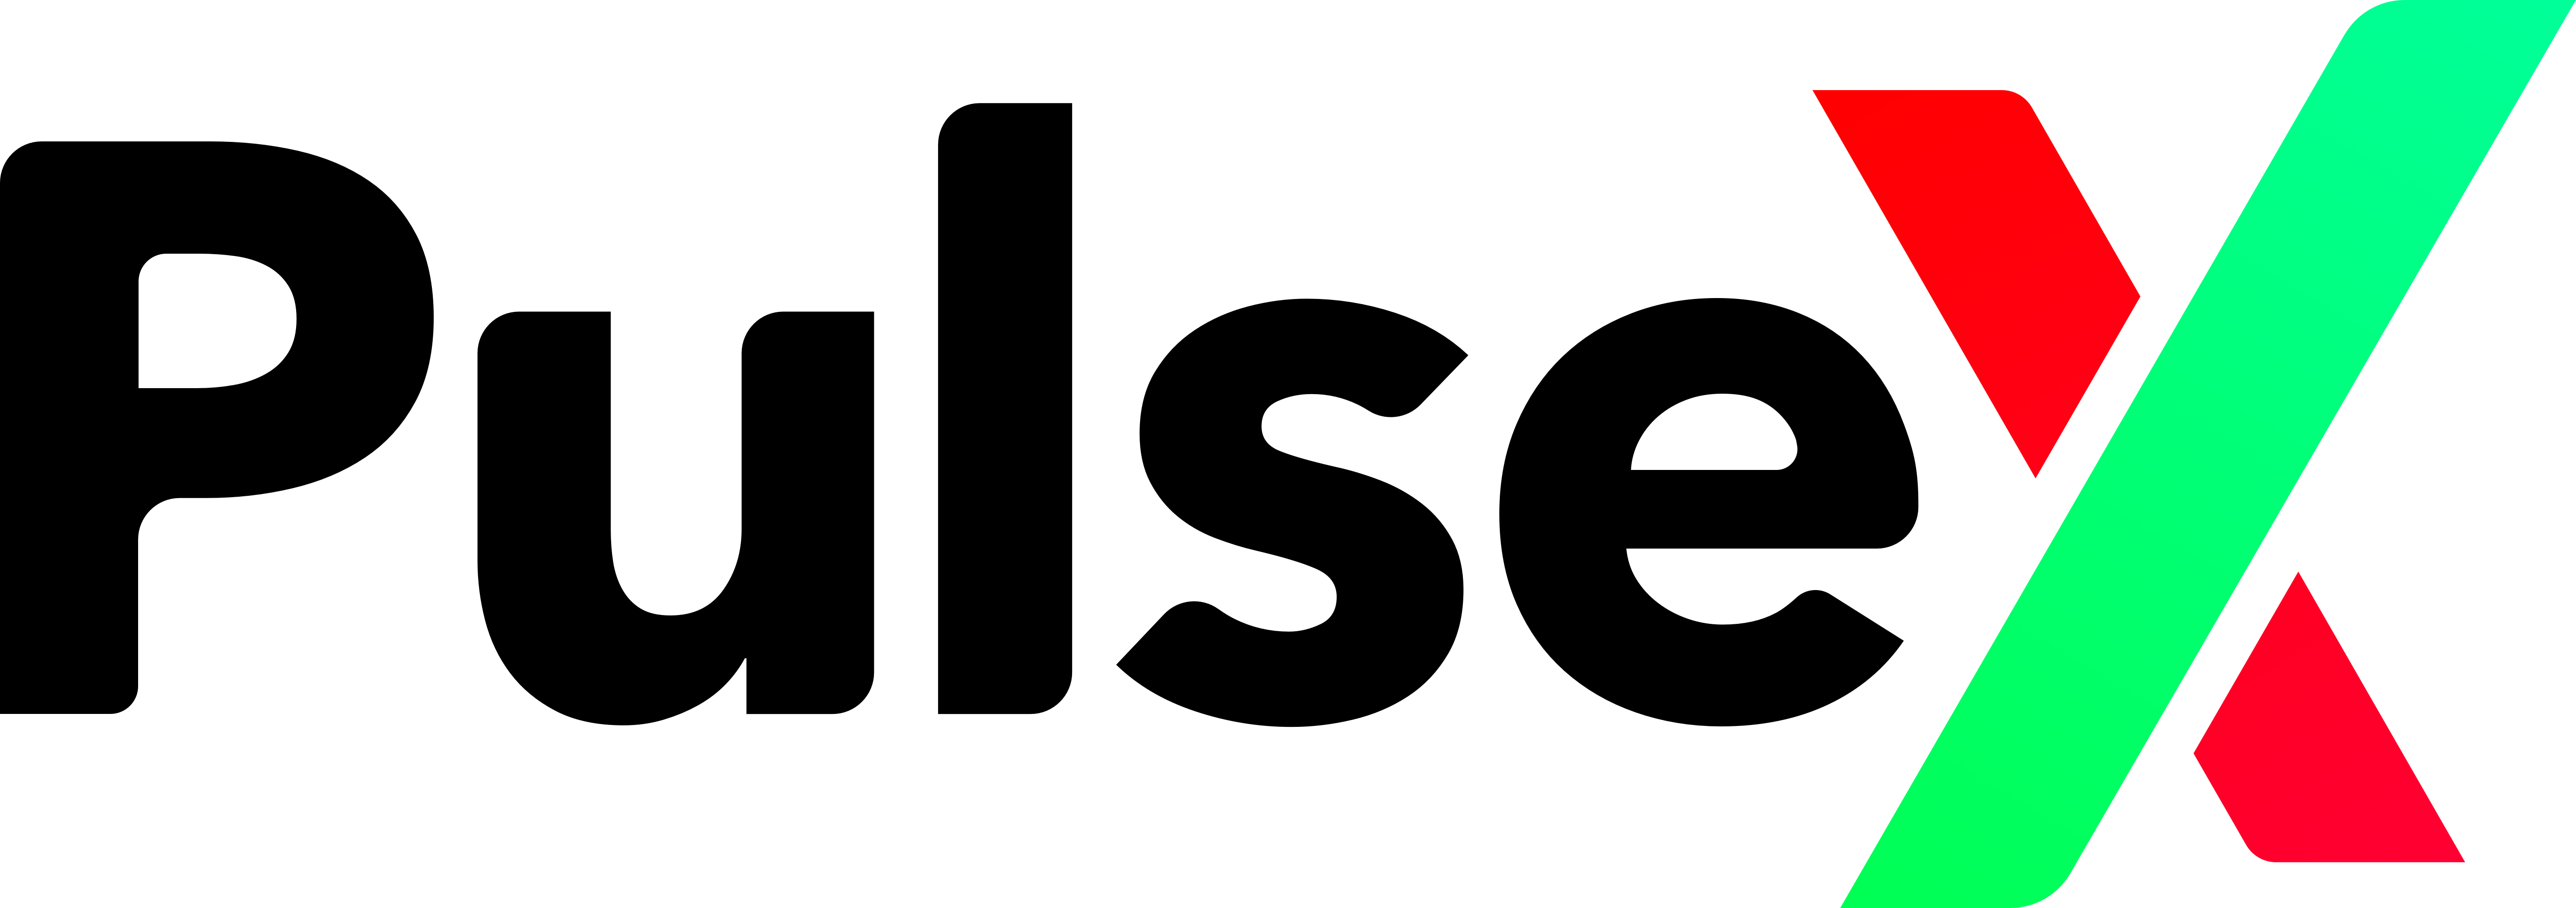 Official PulseX logo - dark version